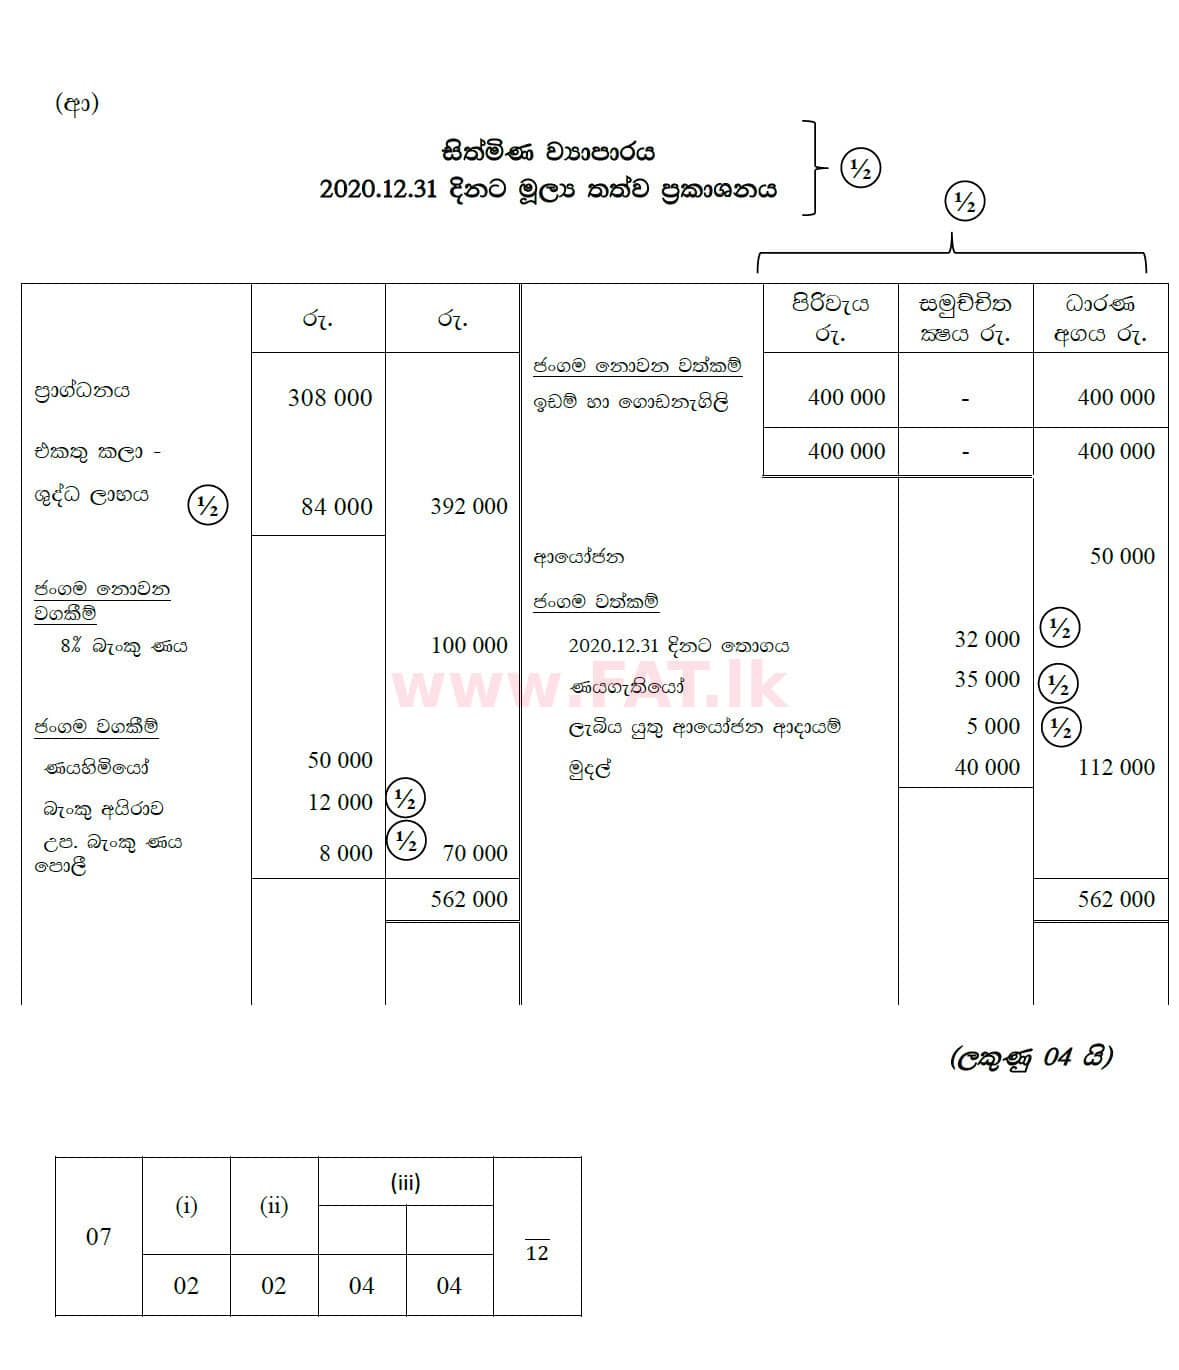 உள்ளூர் பாடத்திட்டம் : சாதாரண நிலை (சா/த) வர்த்தகக் கல்வி மற்றும் கணக்கியல் - 2020 மார்ச் - தாள்கள் II (සිංහල மொழிமூலம்) 7 5773